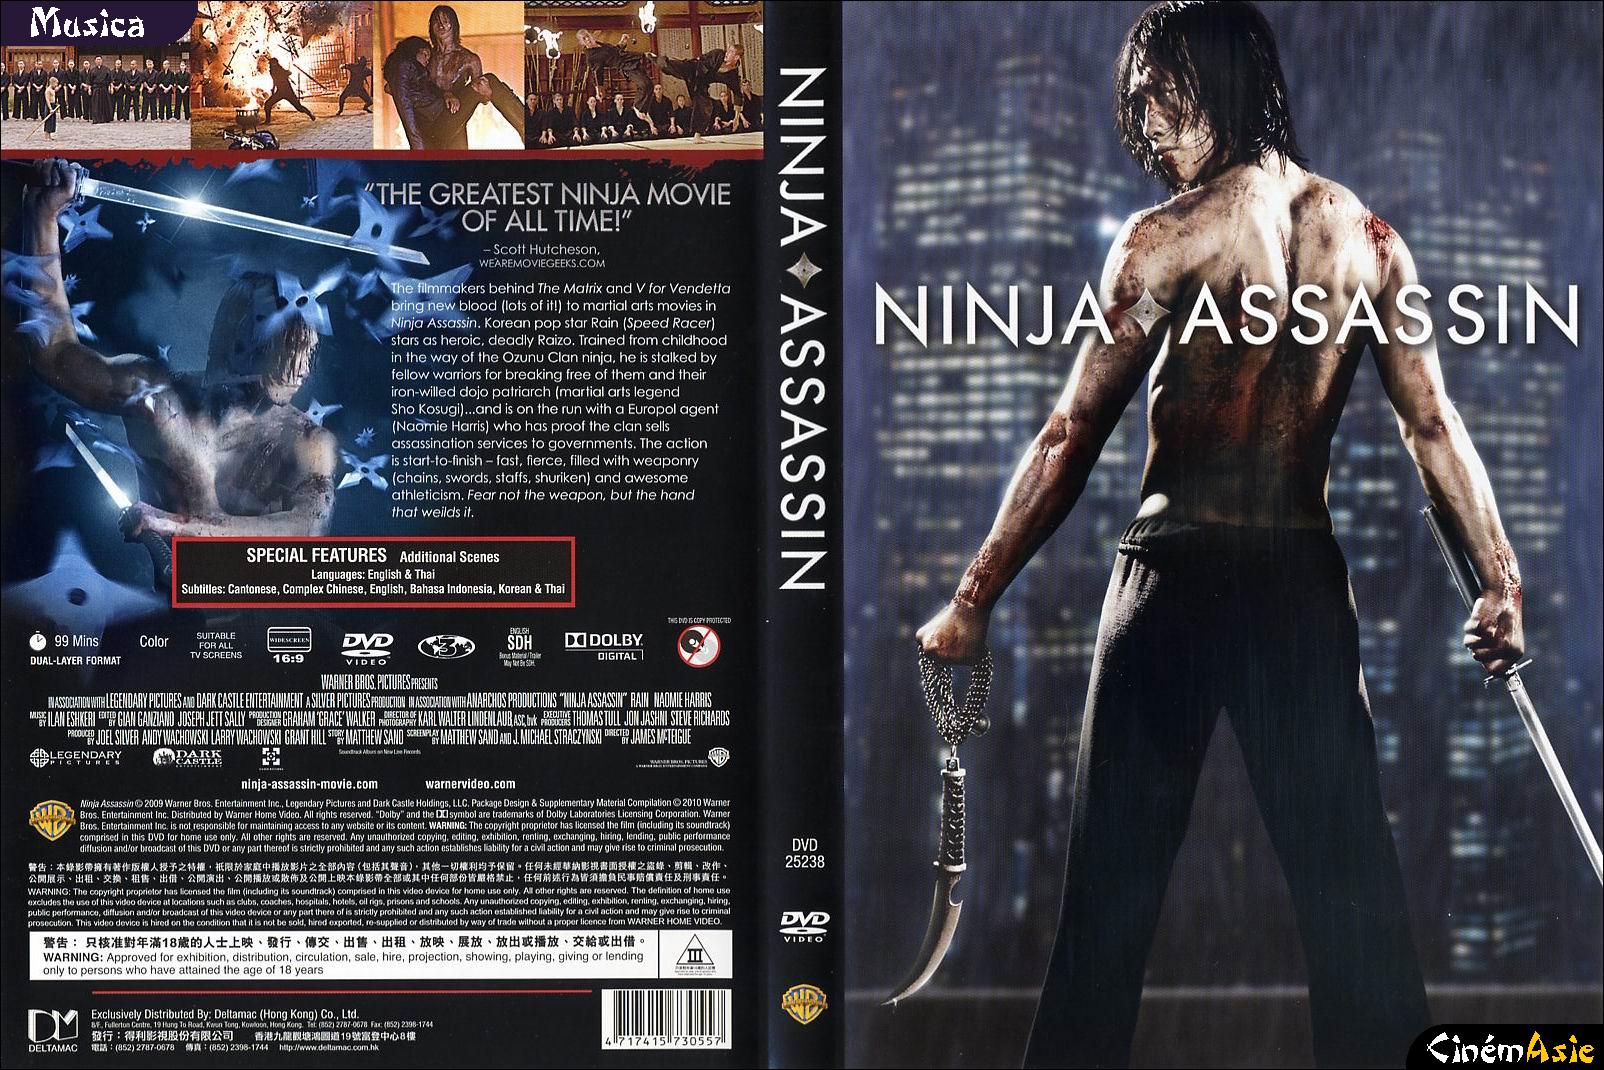 ninja assassin 2 full movie